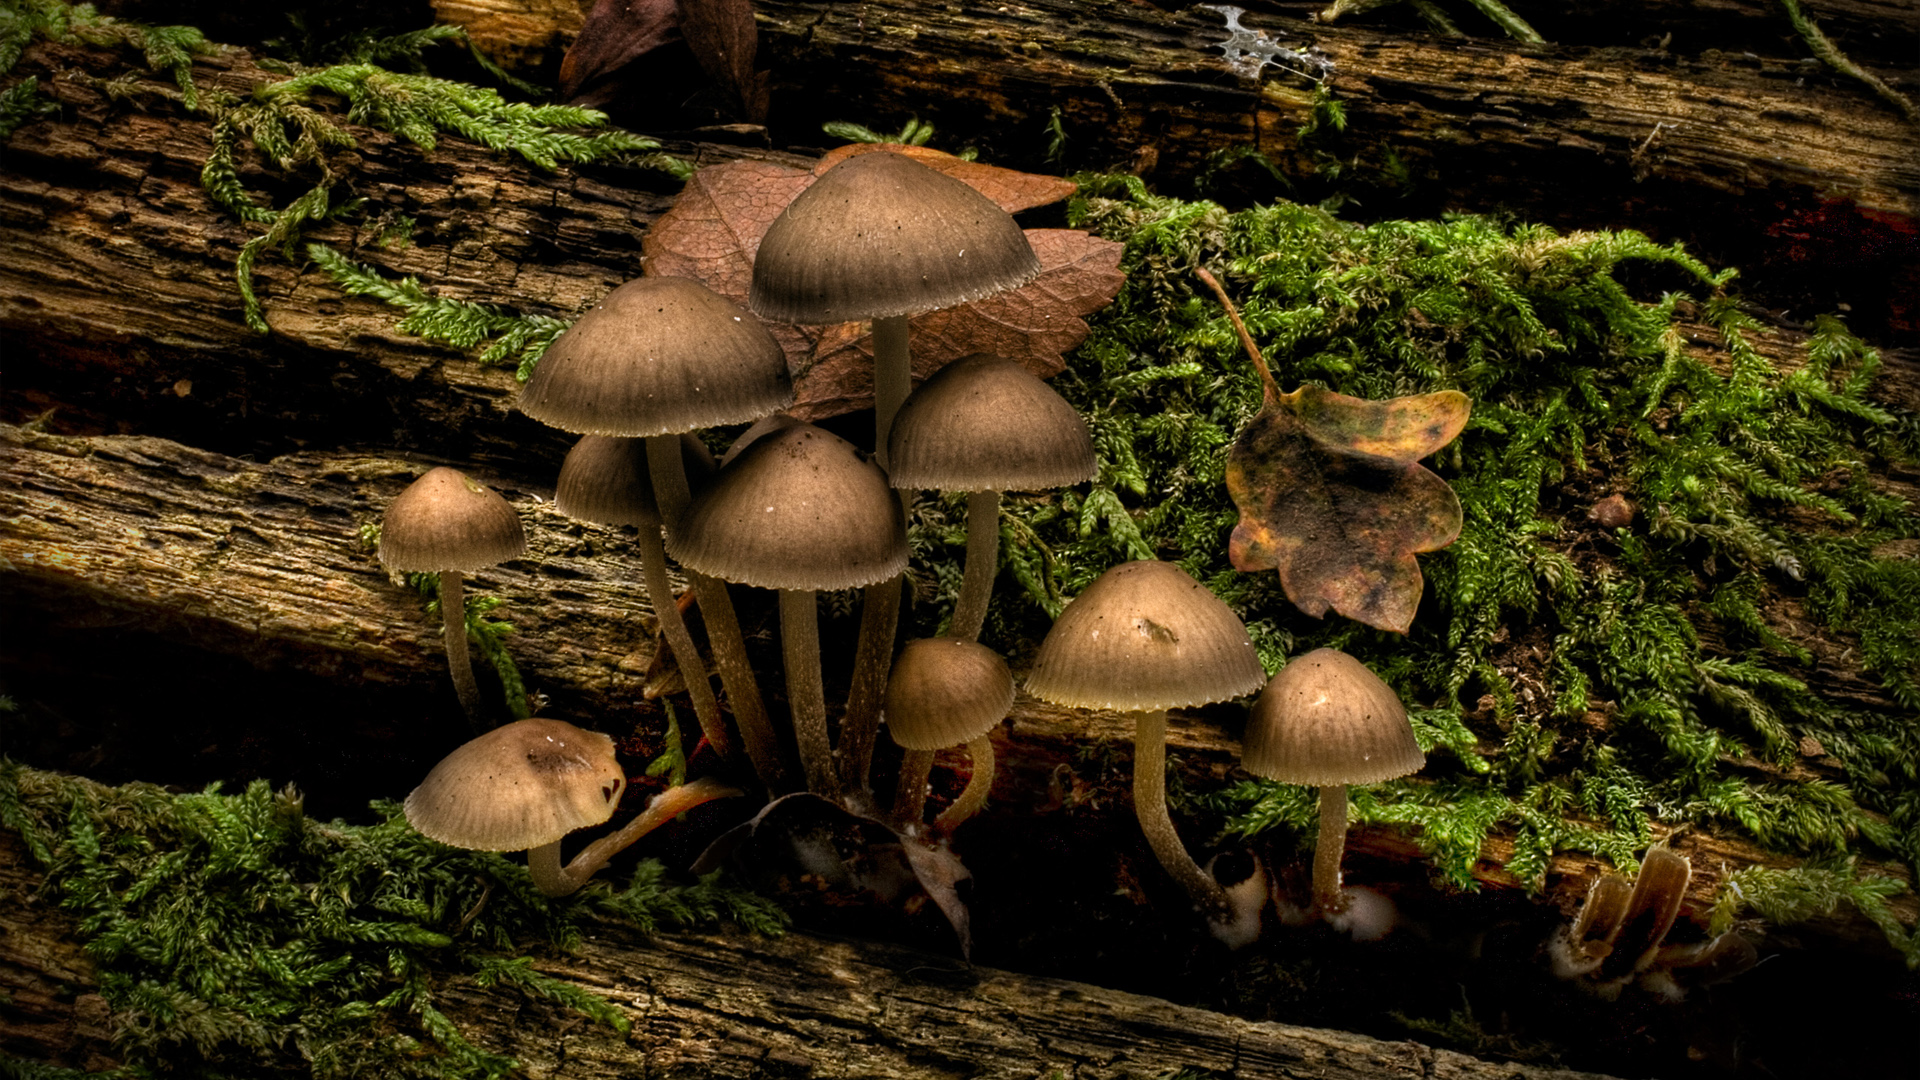 Download full size mushrooms Plants wallpaper / 1920x1080